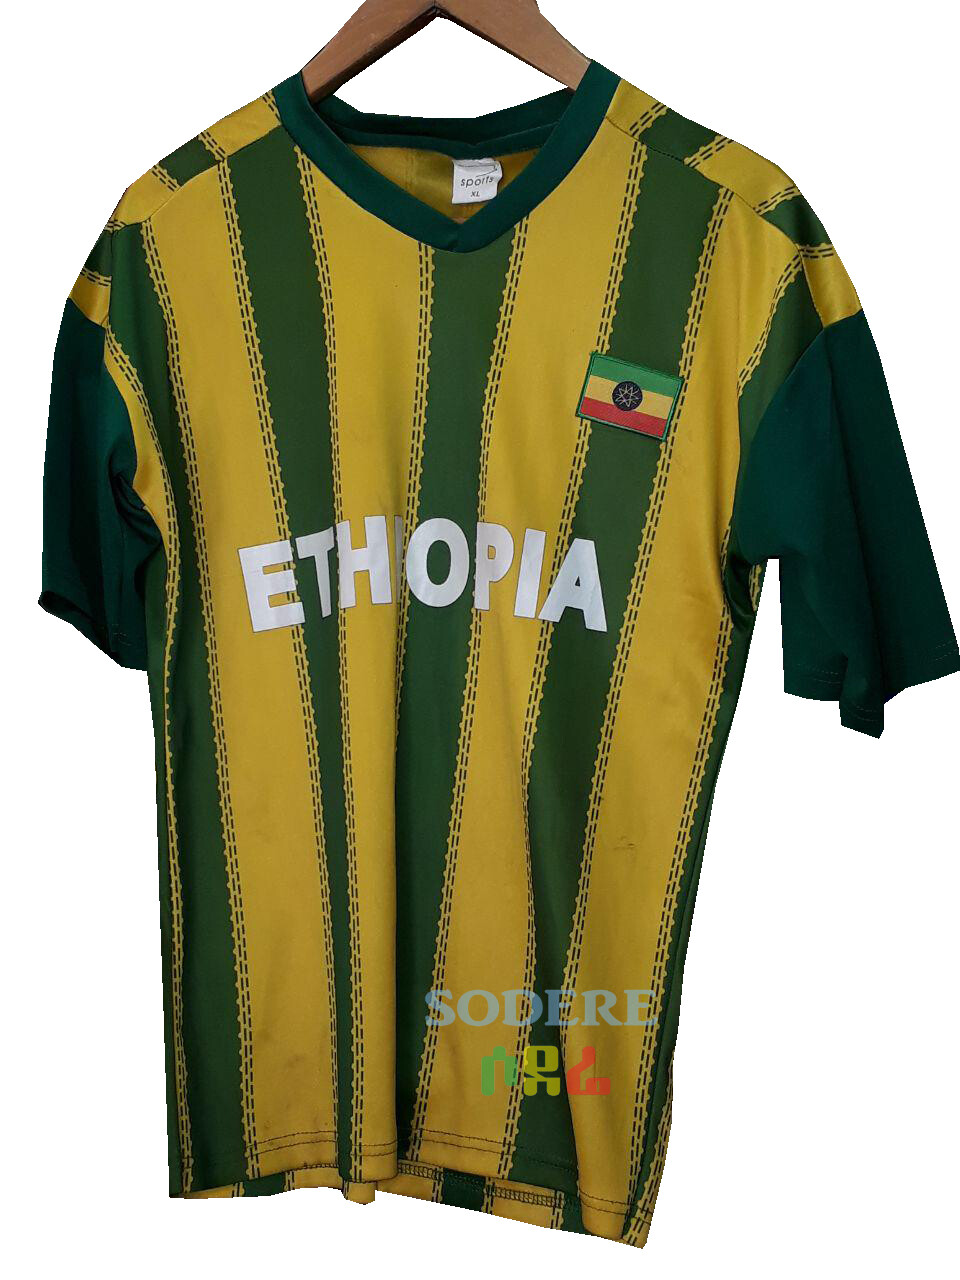 የኢትዮጵያ ማልያ እጅጌ ጉርድ ቲሸርት Ethiopian National Team T-shirt